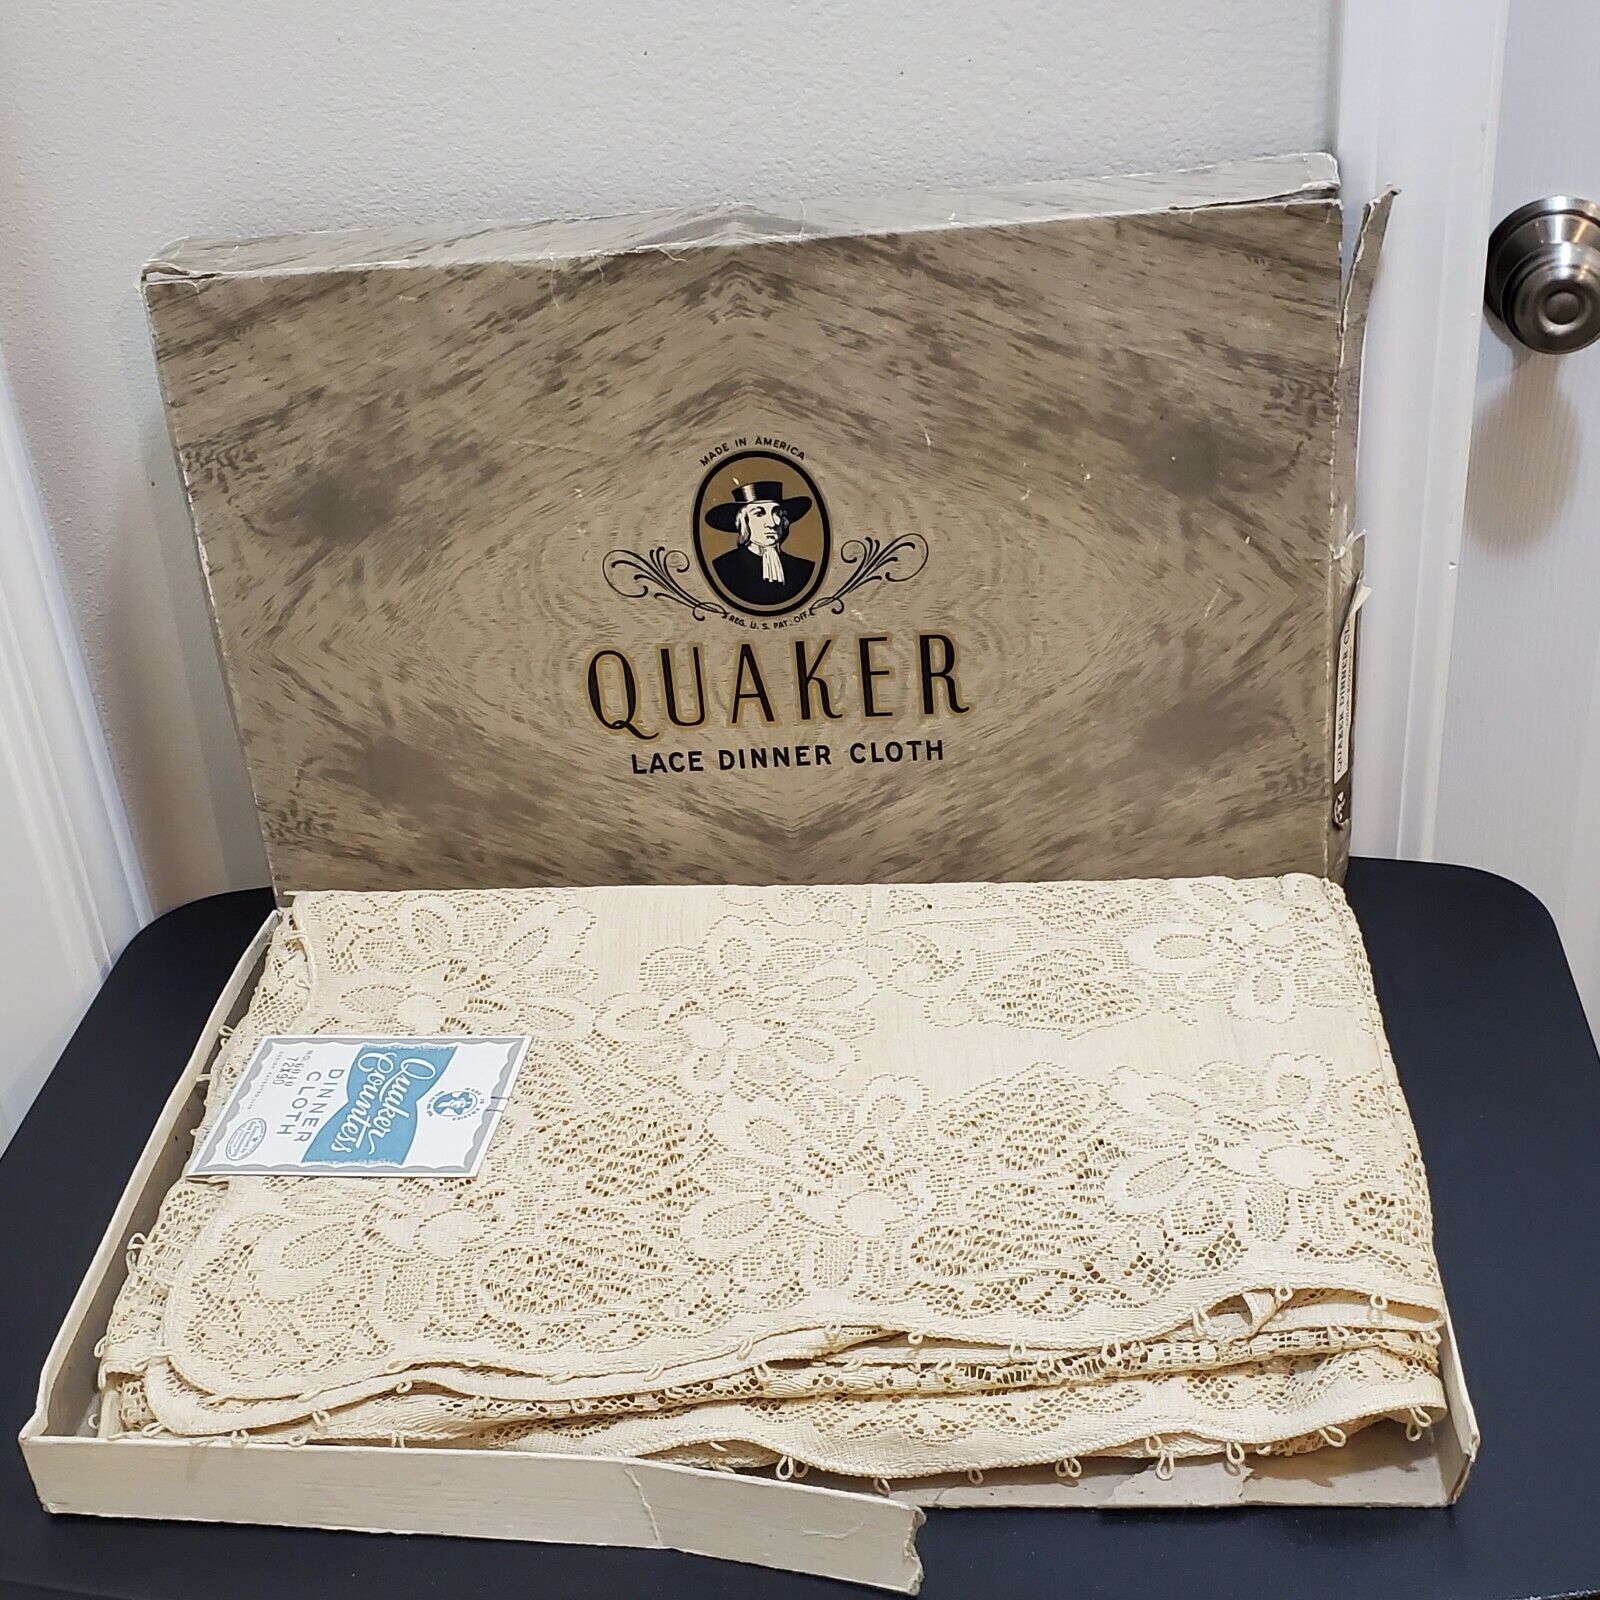 VTG New Antique Quaker Ecru Lace Victorian Banquet Dinner Tablecloth #6040 72x90